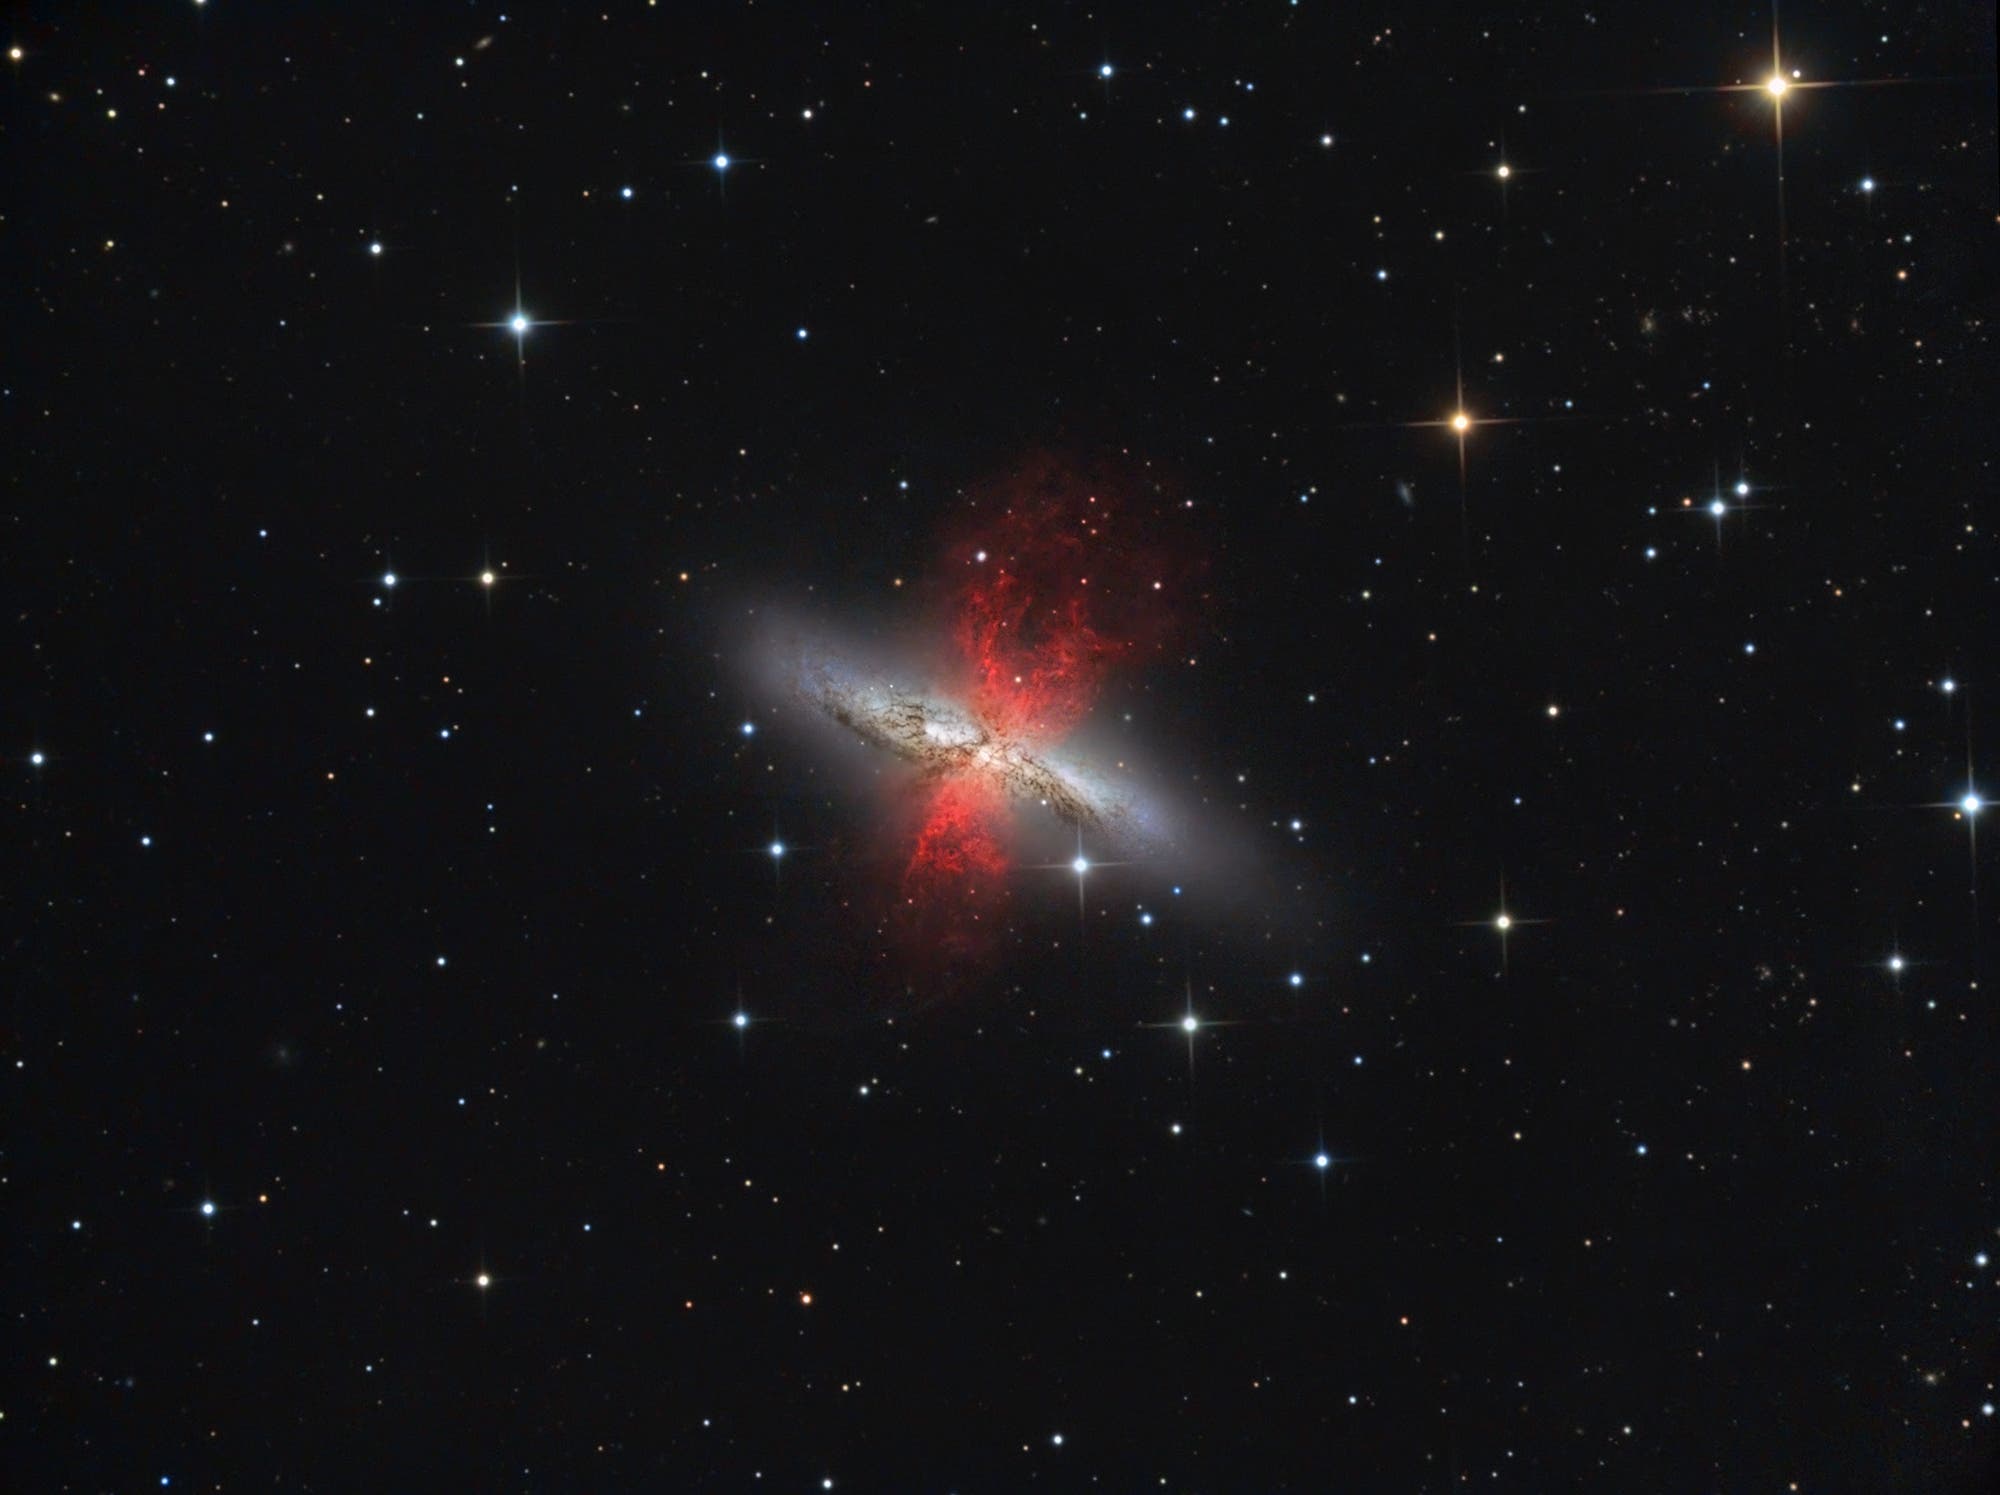 Messier 82 